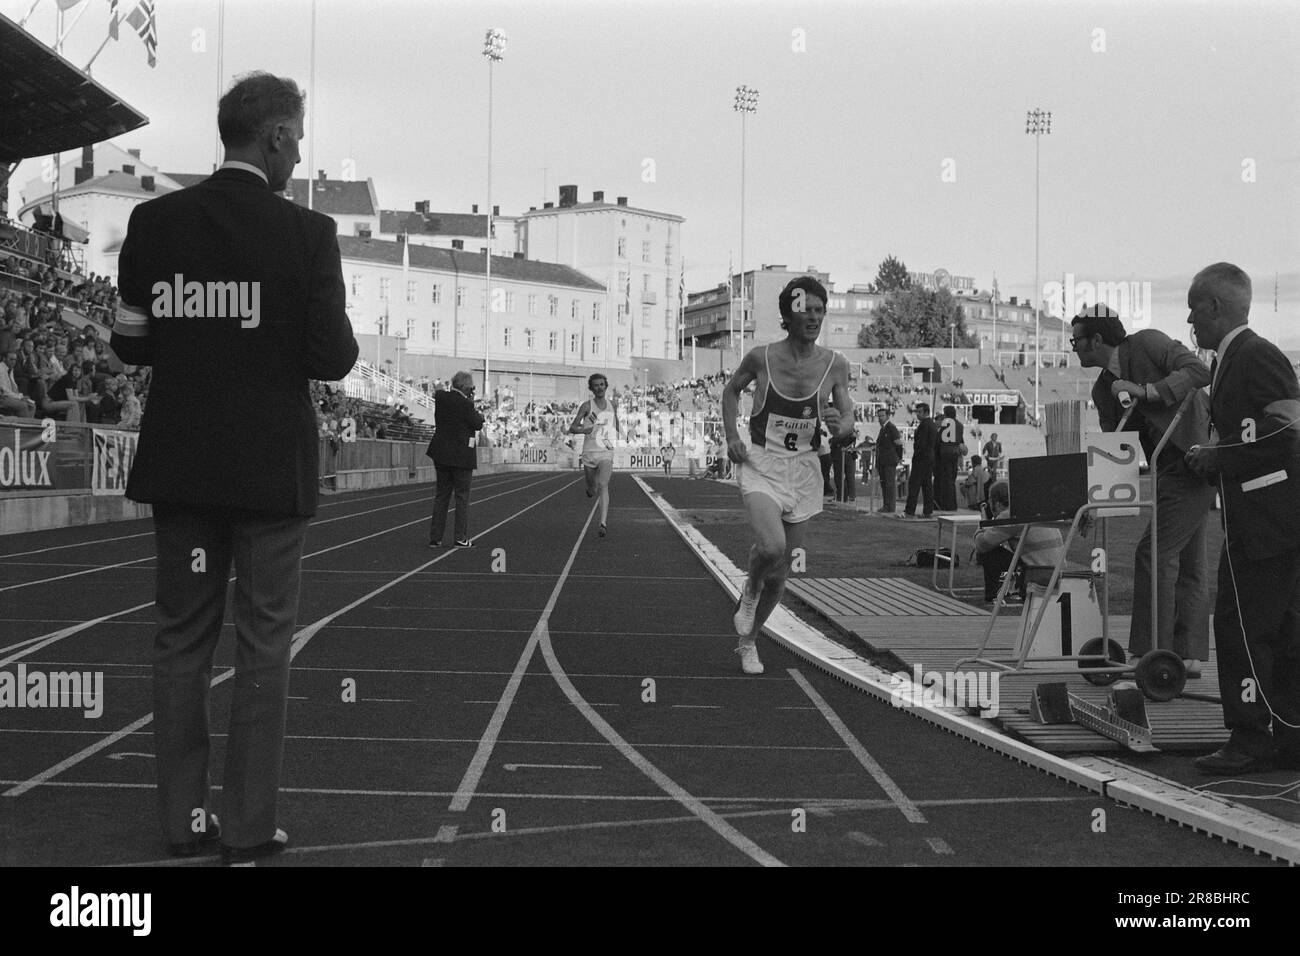 Aktuell 29 - 6 - 1974: Kleiner Bruder in der Welt EliteLittle Brother hat Big Brother für immer distanziert. Arne Kvalheim muss in der Schlange stehen. Knut Kvalheim gehört nach 13.20.4 während der Top Games in Helsinki vor ein paar Wochen zur entschieden Weltelite in 5000 Metern Höhe. Bis heute hält er drei norwegische Rekorde, 3.000 Meter Steeplechase und flach und 5.000 Meter. Knut Kvalheim - mit seinen drei norwegischen Rekorden - muss sich in knapp zwei Monaten während der EG in Rom in der Favoritengruppe wiederfinden. Foto: Jo Grim Gullvåg / Aktuell / NTB ***FOTO NICHT ABGEBILDET*** Stockfoto